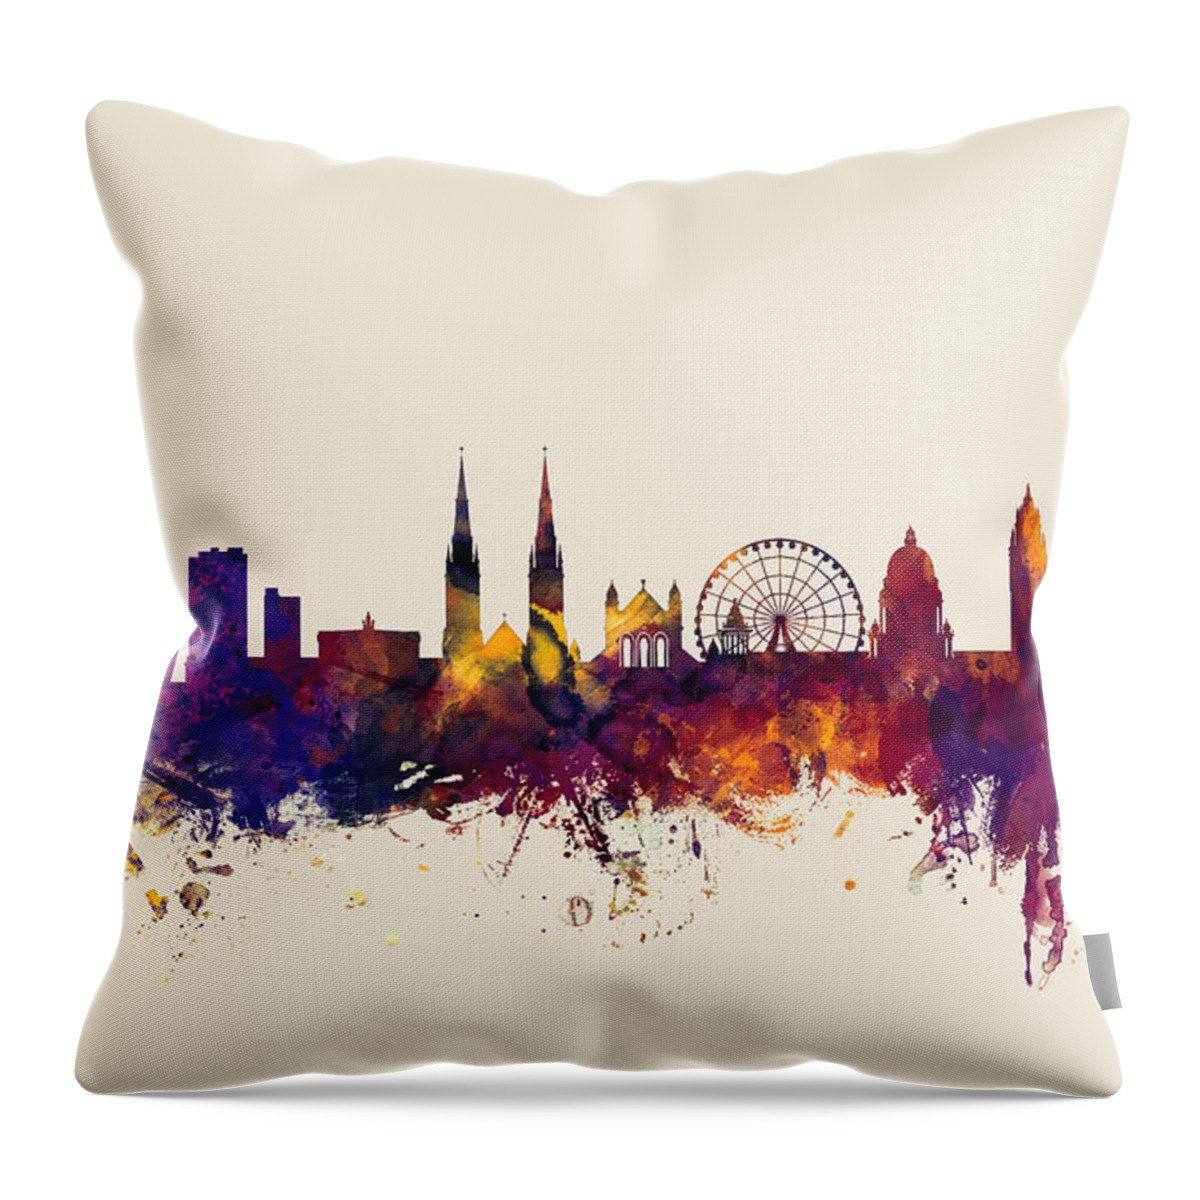 Belfast Throw Pillow featuring the digital art Belfast Northern Ireland Skyline by Michael Tompsett